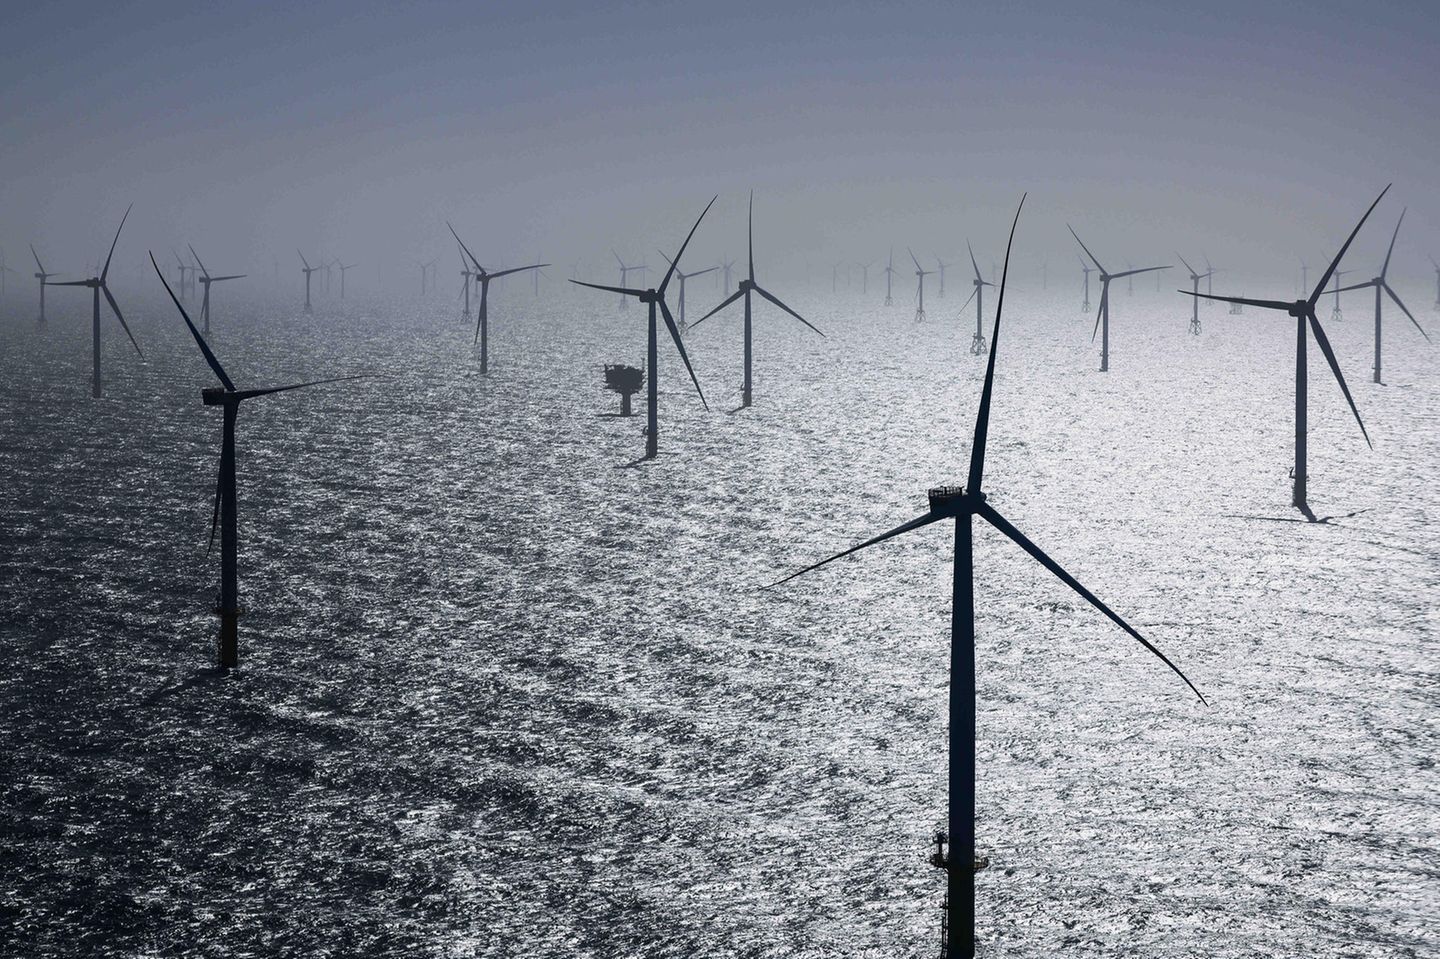 Helgoland: Zahlreiche Windräder, davon einige des neuen RWE-Offshore-Windparks Kaskasi, sind bei der Inbetriebnahme des neuen Windparks rund 35 Kilometer nördlich der Insel Helgoland zu sehen